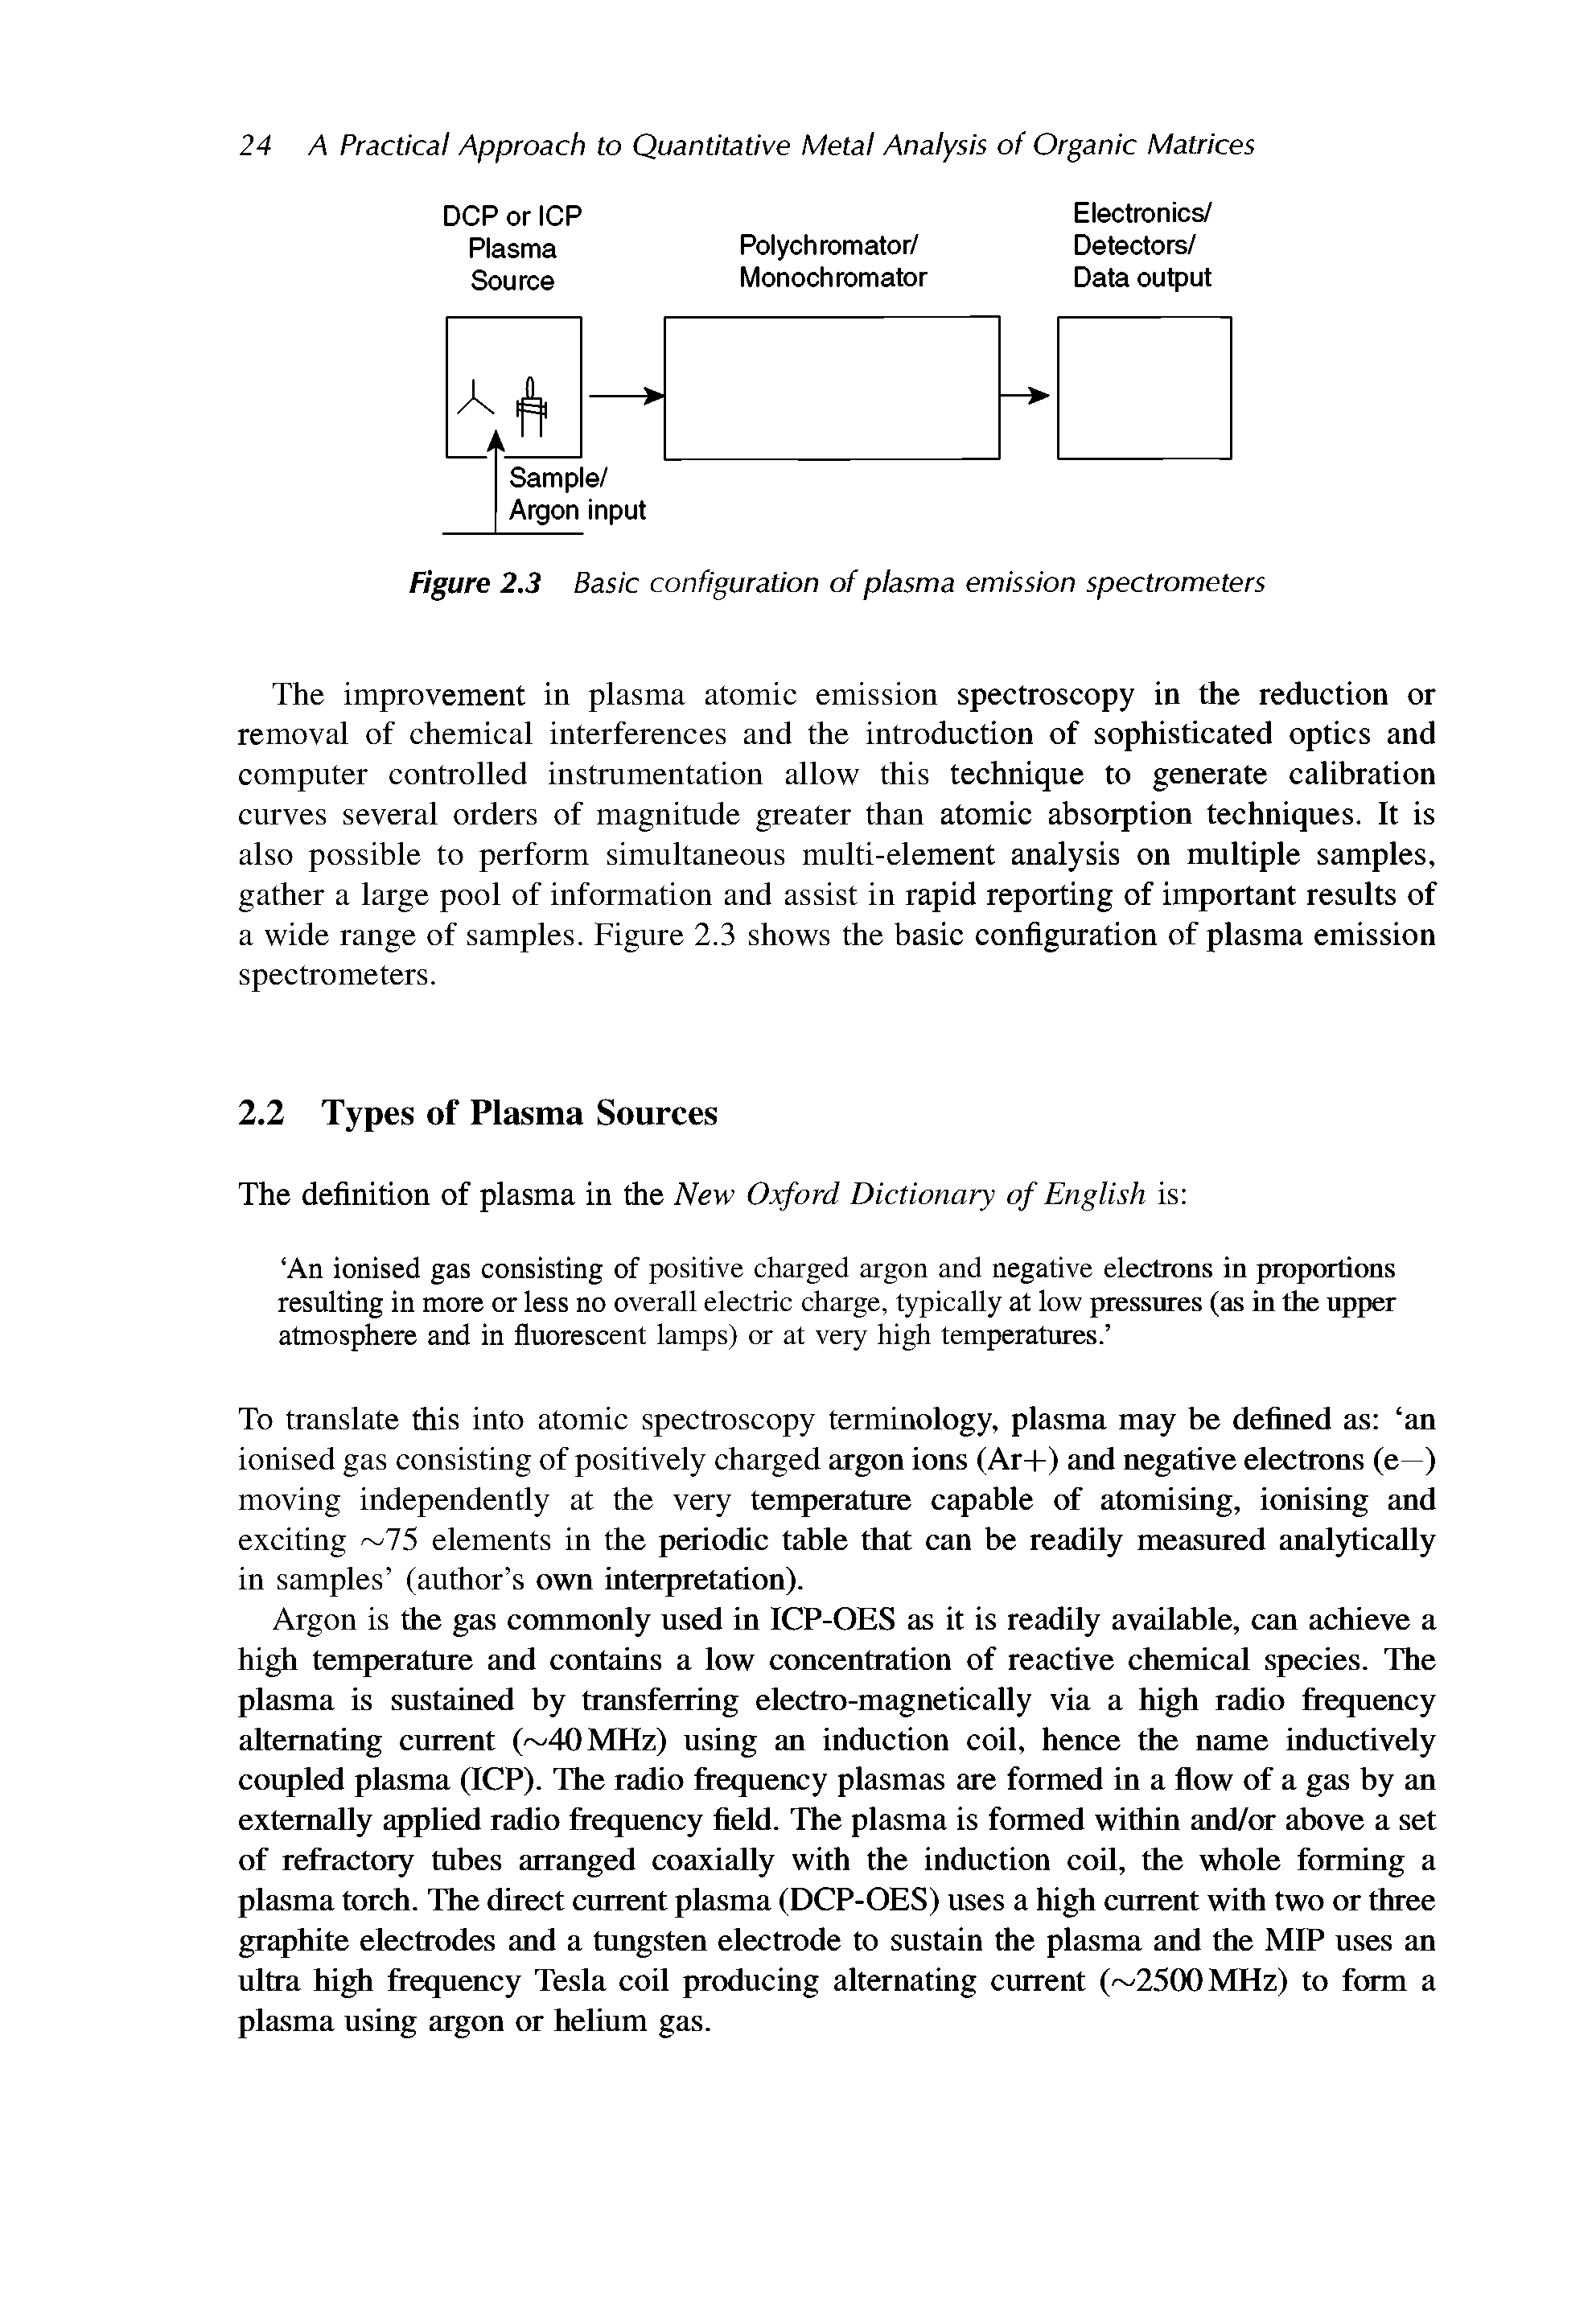 Figure 2.3 Basic configuration of plasma emission spectrometers...